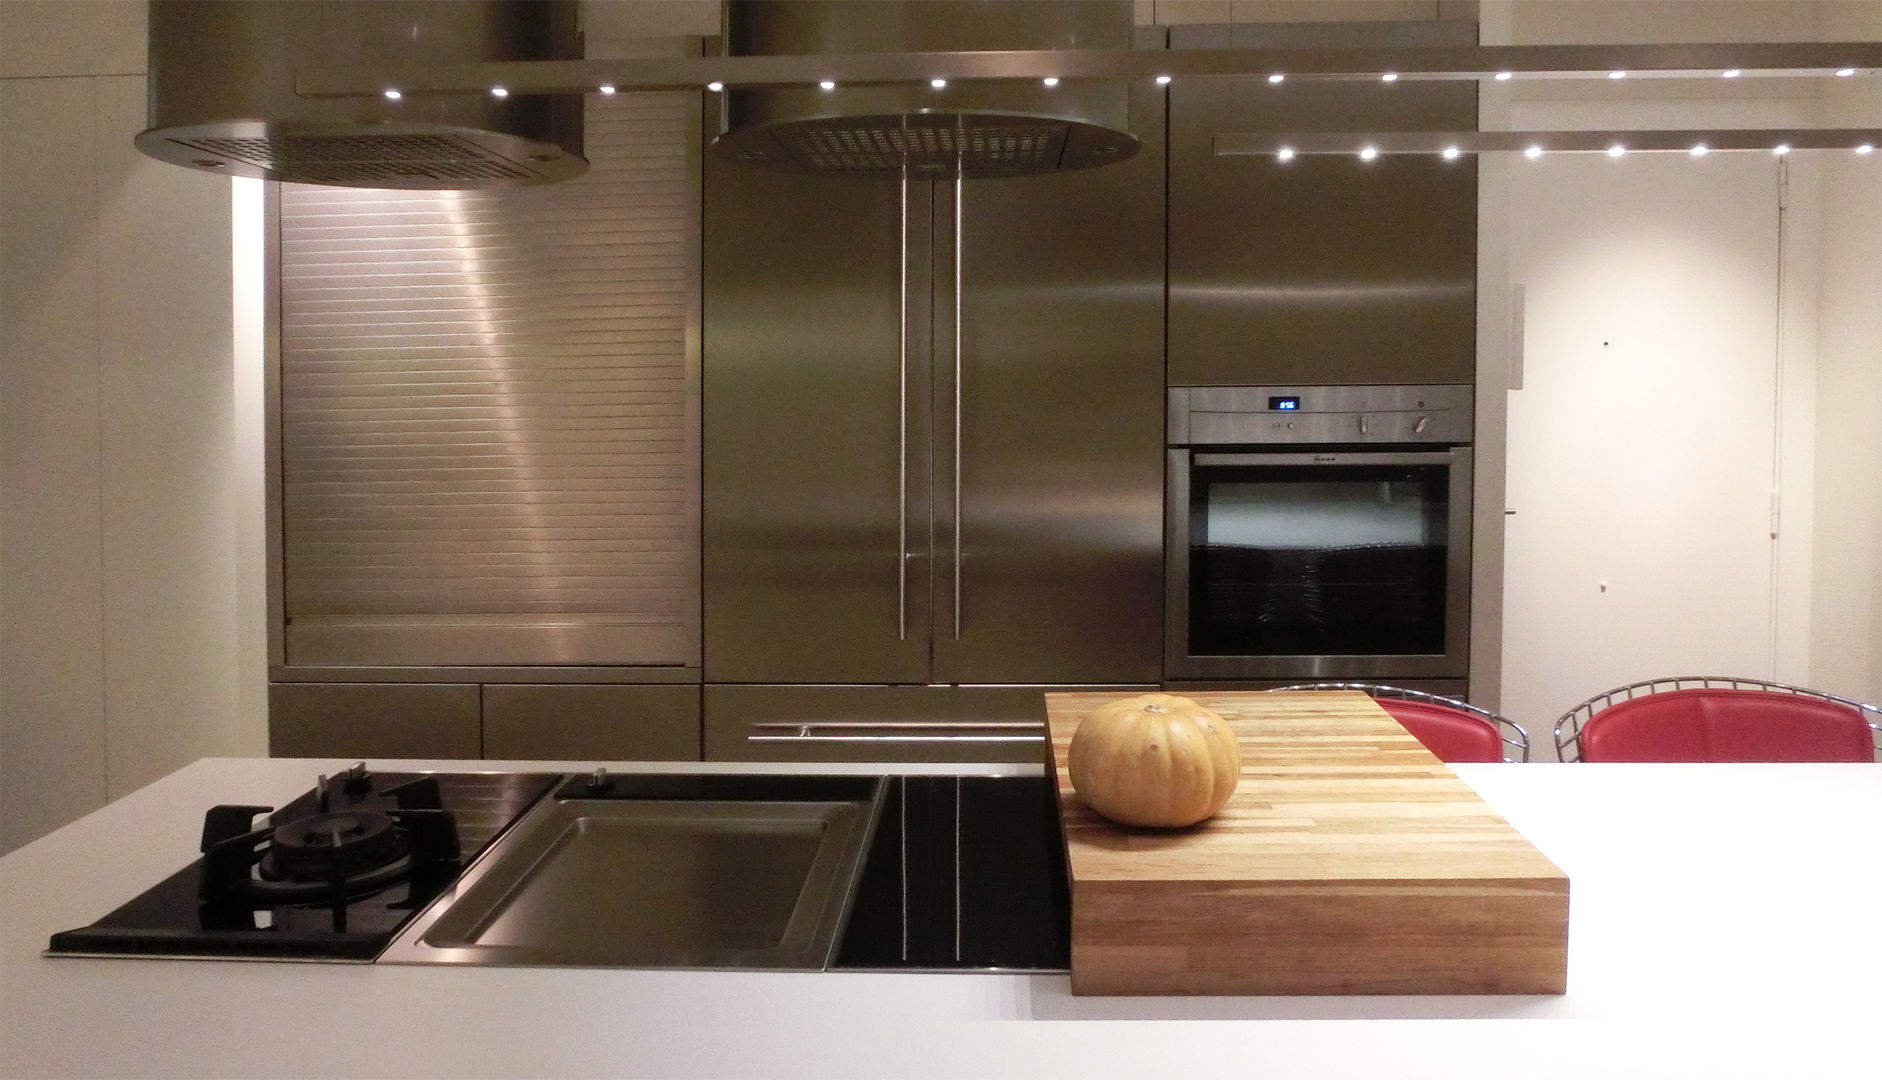 Detalle de los 3 módulos de coccion Daifuku Designs Cocinas de estilo minimalista kitchen cabinet,kitchen island